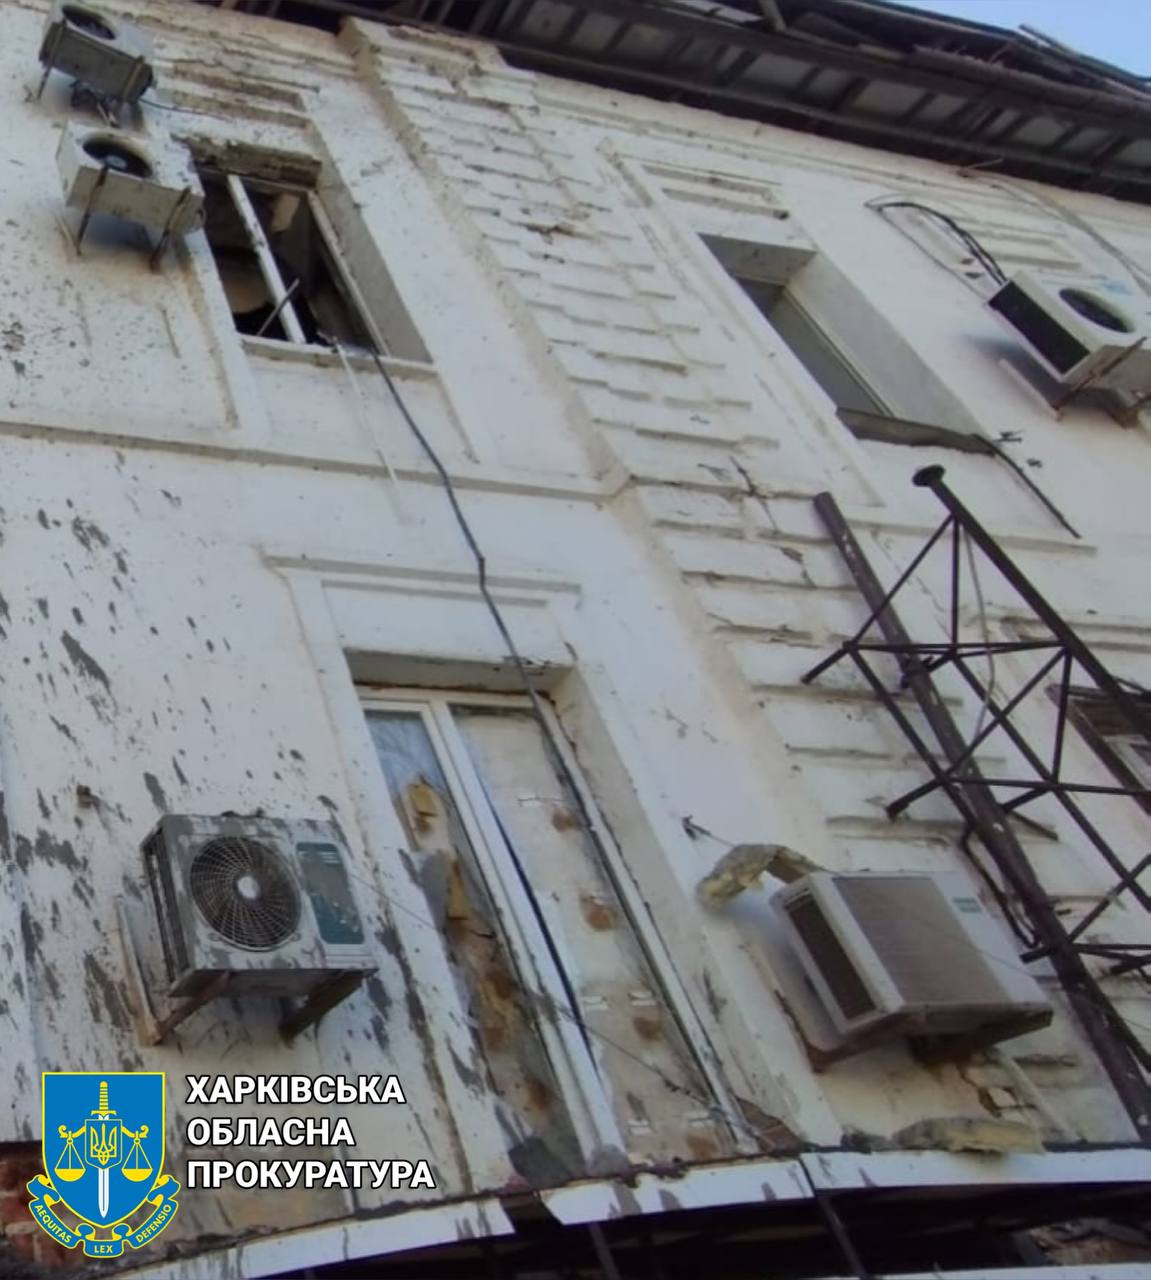 Ракетный удар повредил магазины, жилые дома и офисы в Харькове